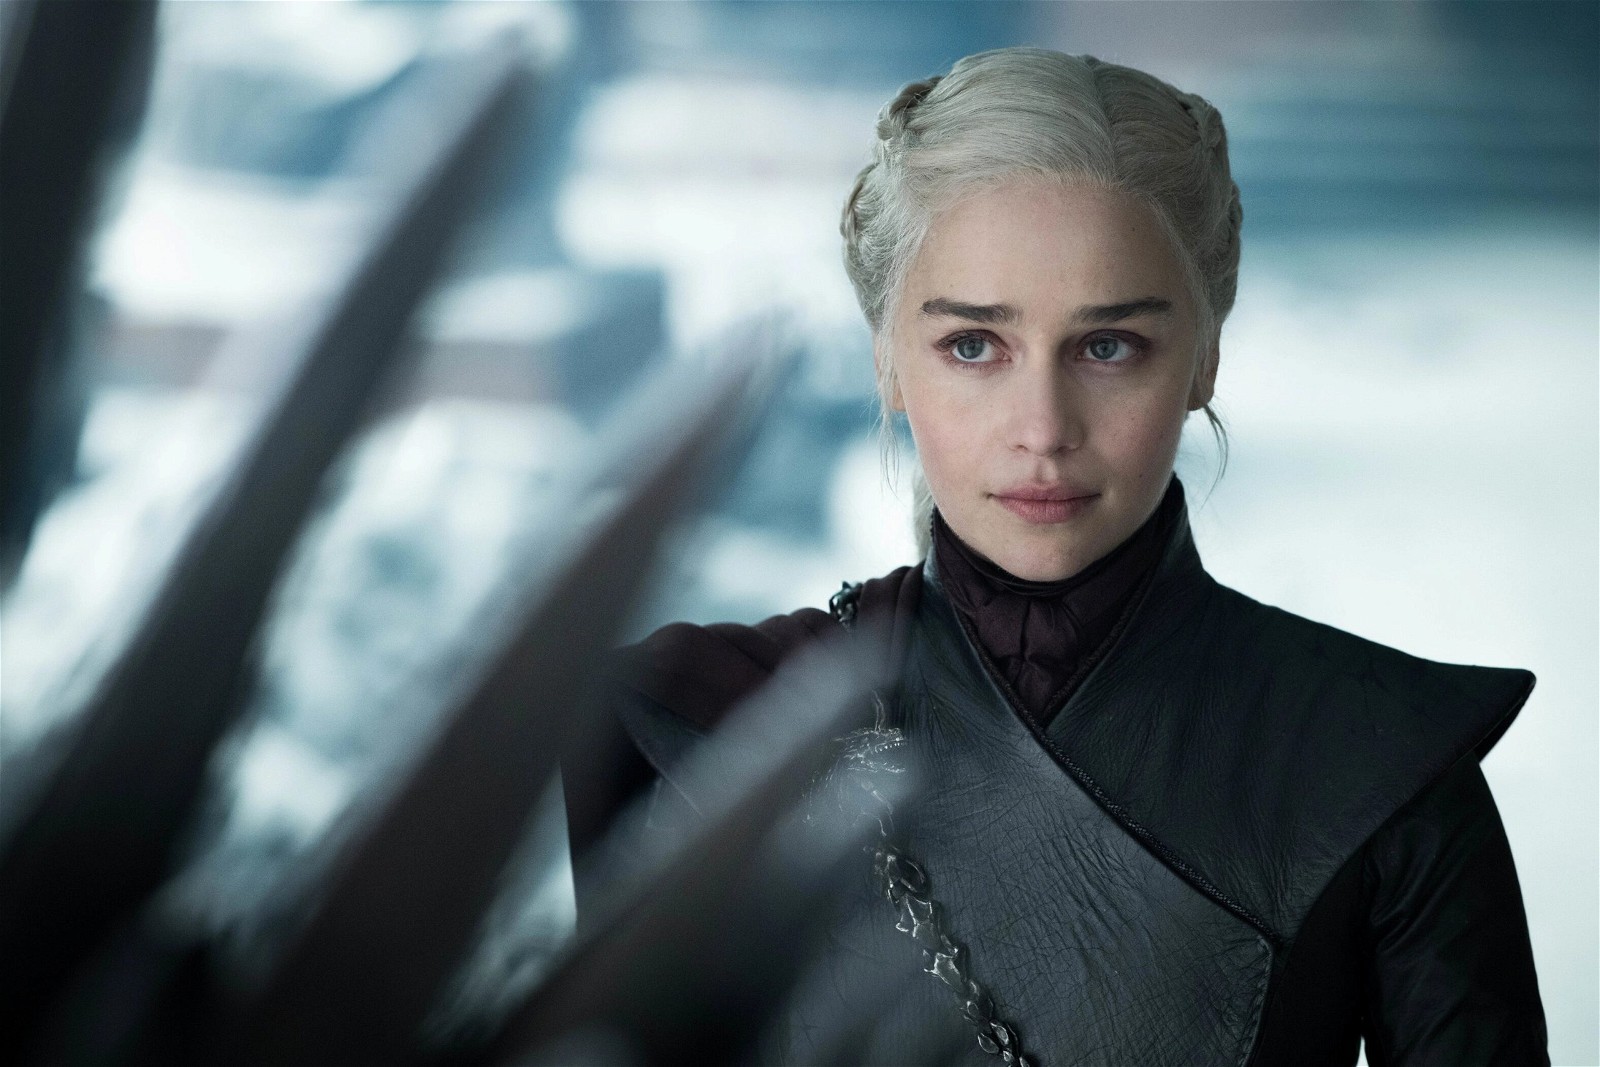 Emilia Clarke in Game of Thrones(2011-2019).